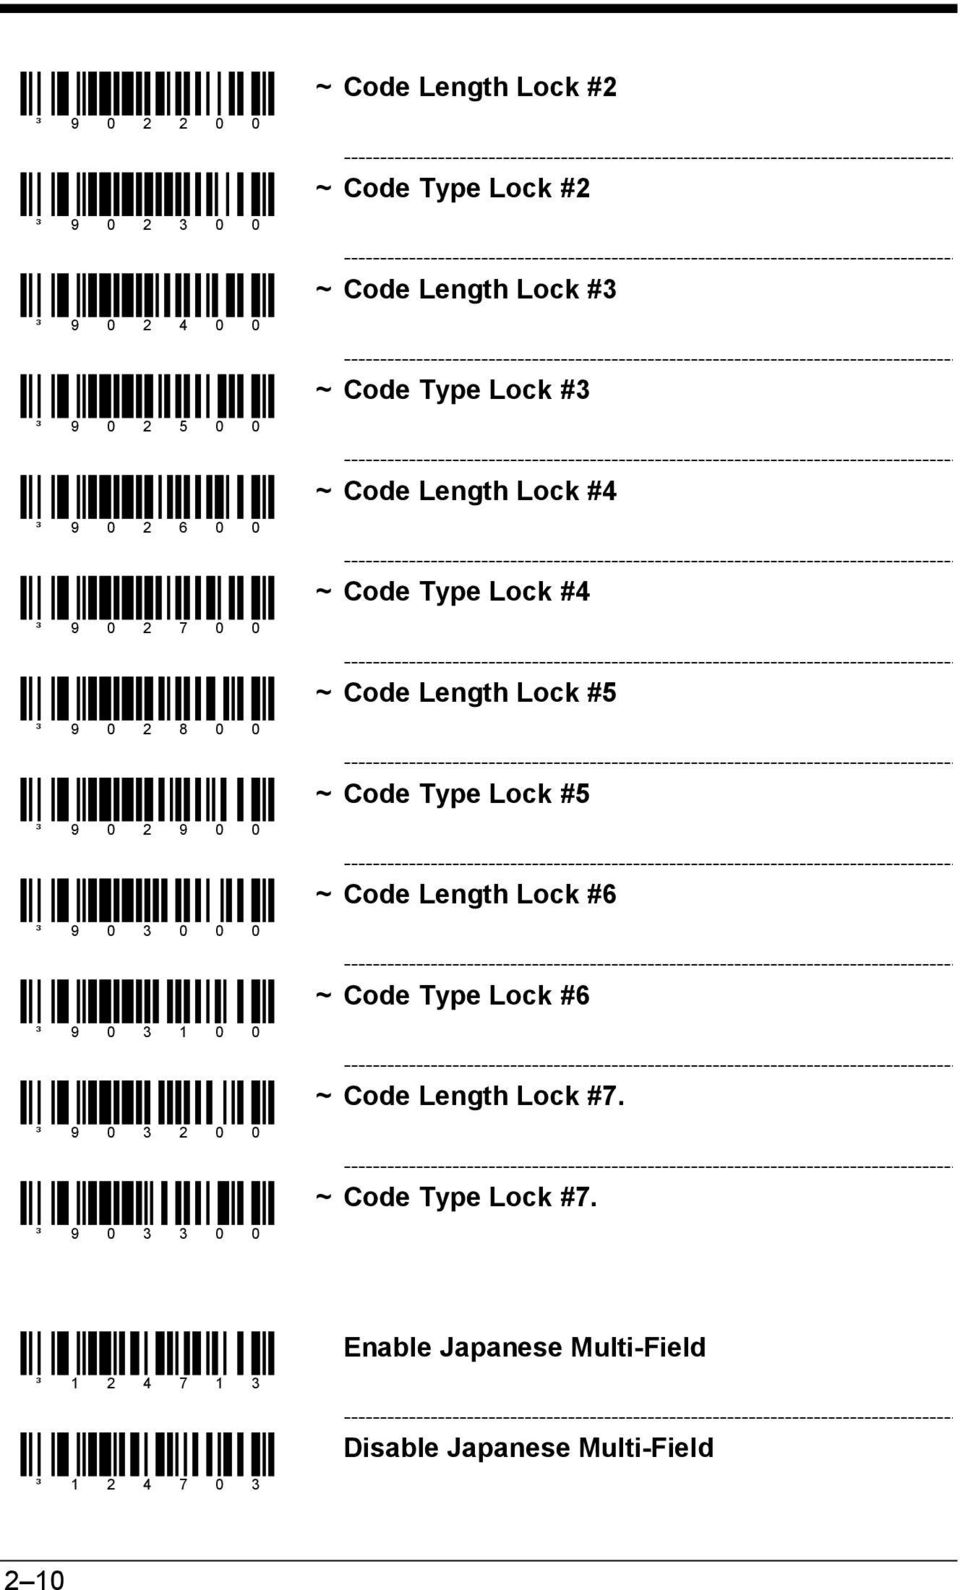 9 0 0 ~ Code Type Lock #5 ³ 9 0 3 0 0 0 ~ Code Length Lock #6 ³ 9 0 3 1 0 0 ~ Code Type Lock #6 ³ 9 0 3 2 0 0 ~ Code Length